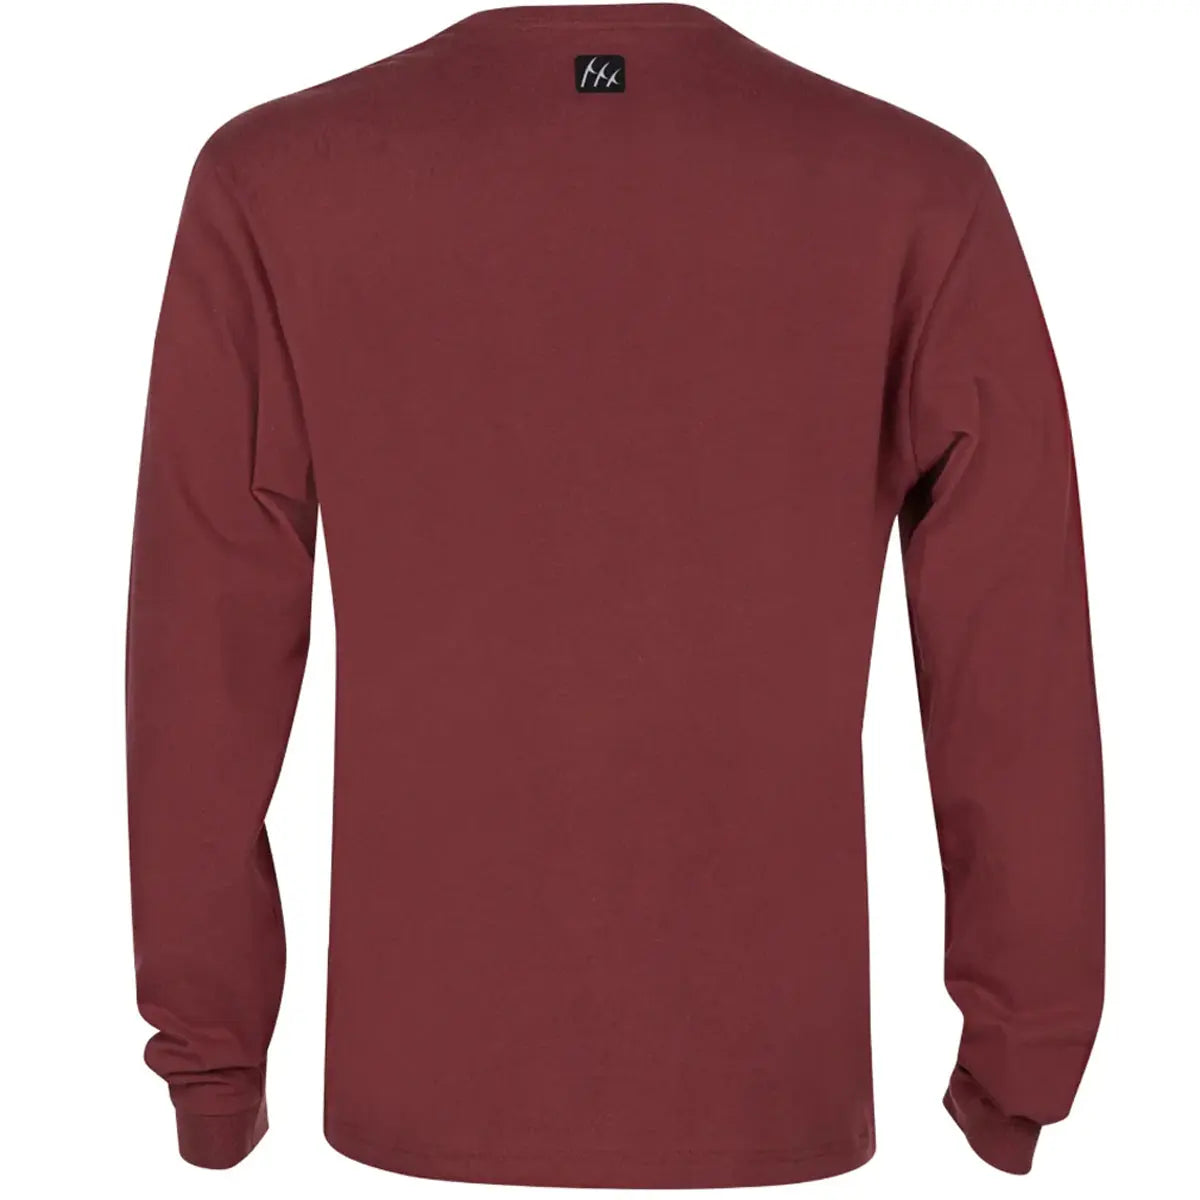 Fintech Heavy-Duty Long Sleeve Graphic T-Shirt - Oxblood Red Fintech